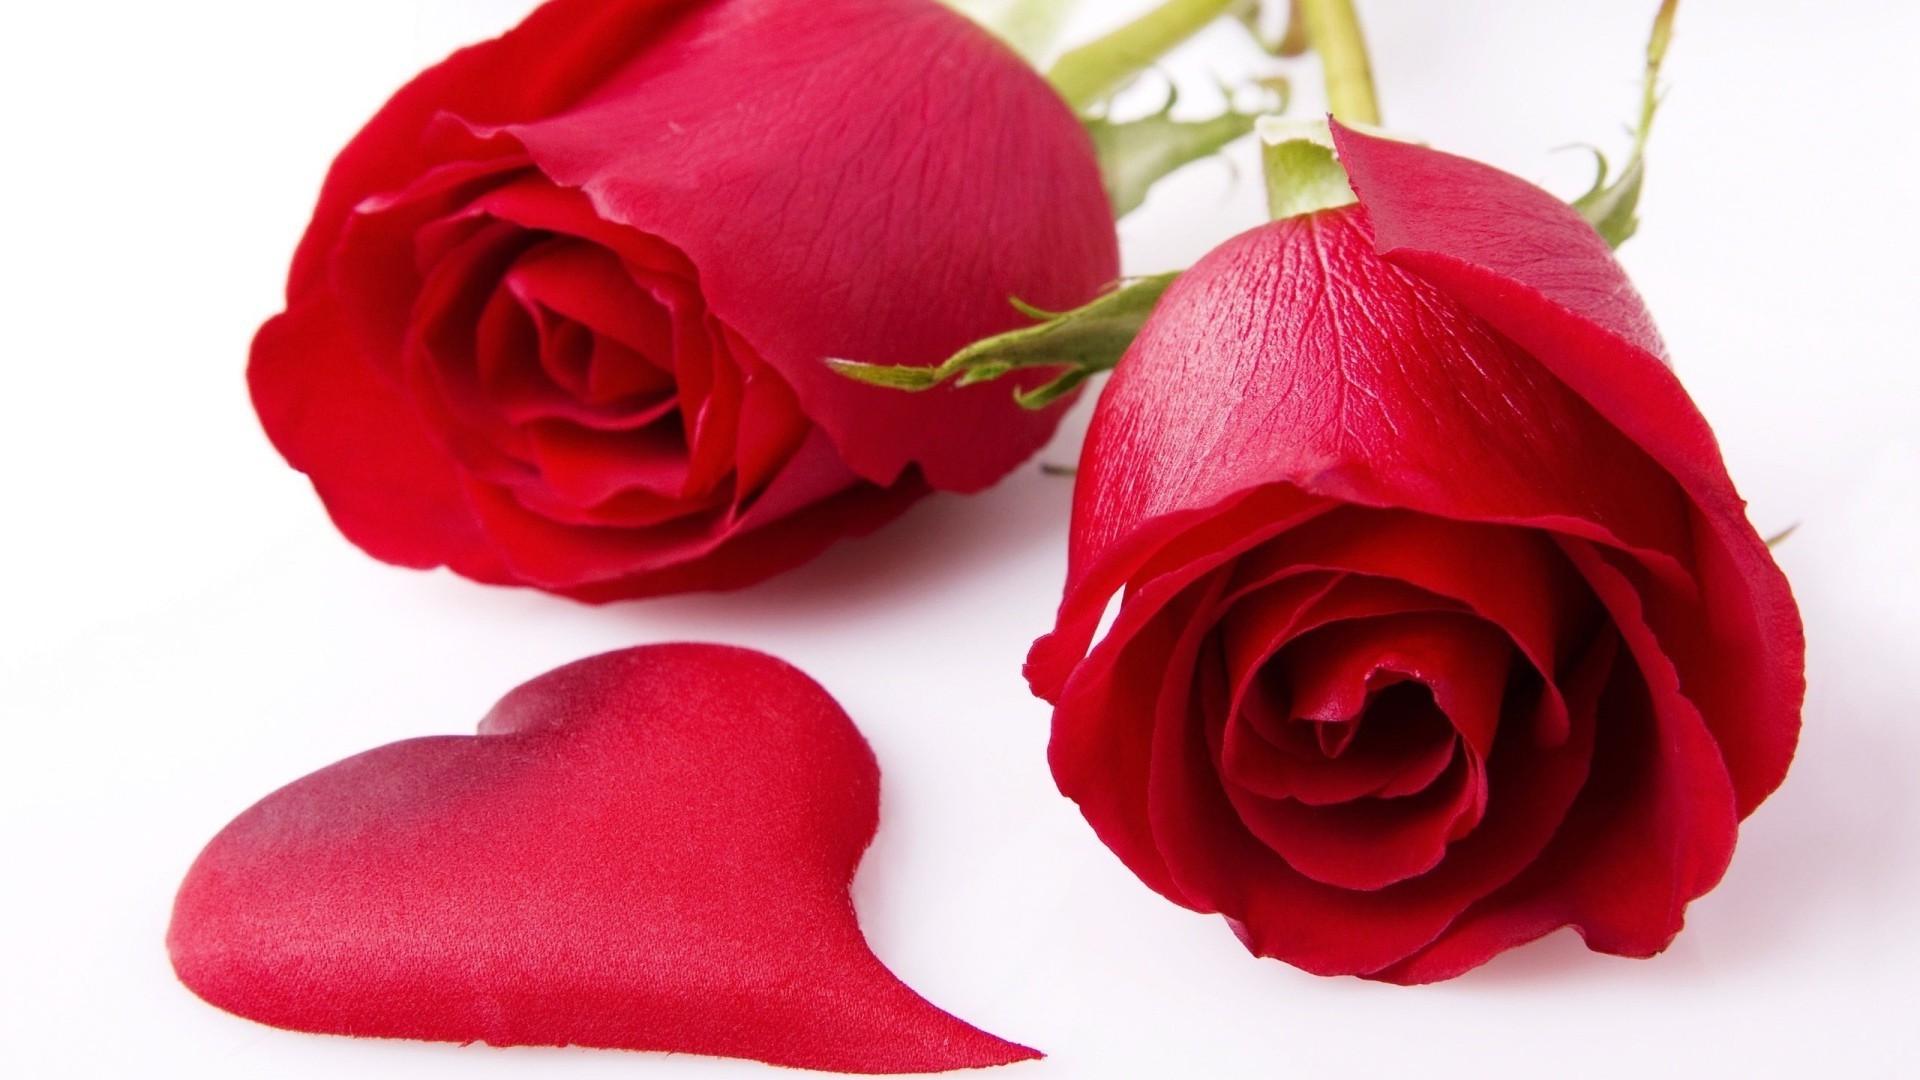 любовь и романтика роза любовь цветок романтика лепесток букет подарок цветочные романтический свадьба юбилей блюминг дружище день рождения природа лист любовь